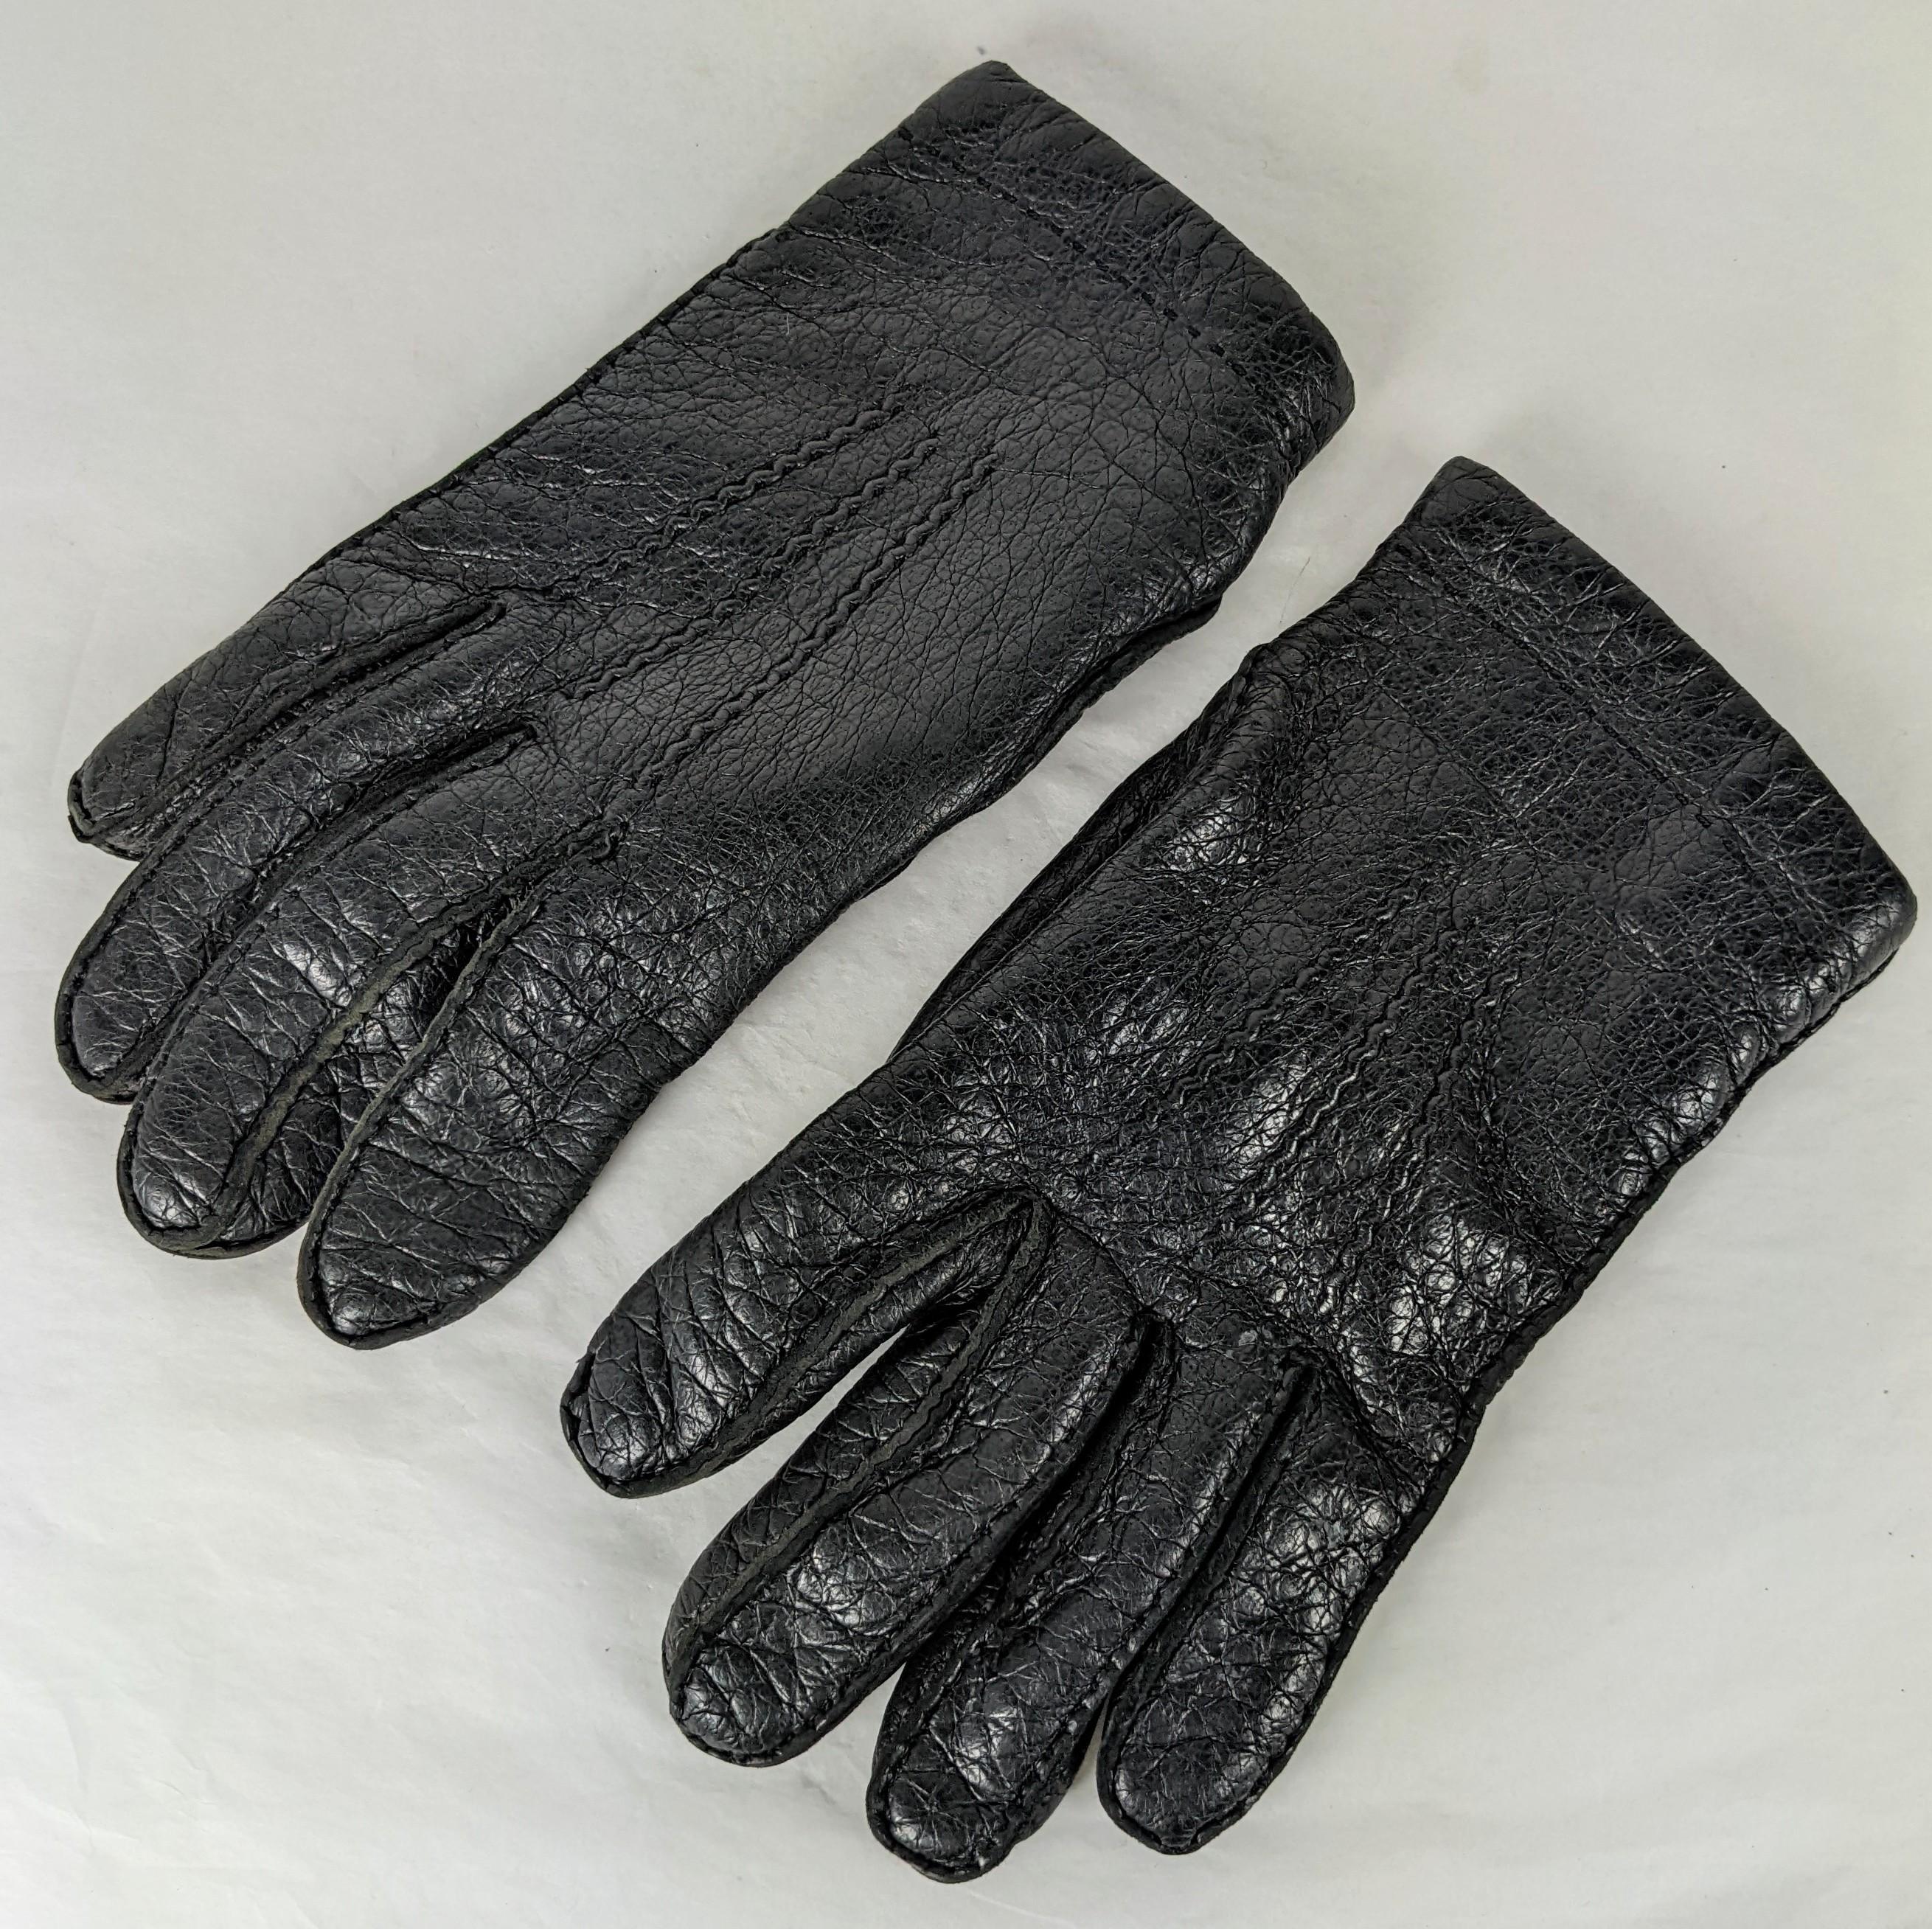 Vintage Hermes Mens Deerskin Cashmere Lined Gloves. Black deerskin hand stitched with beige cashmere knit lining. Size 8. 1980's France. 